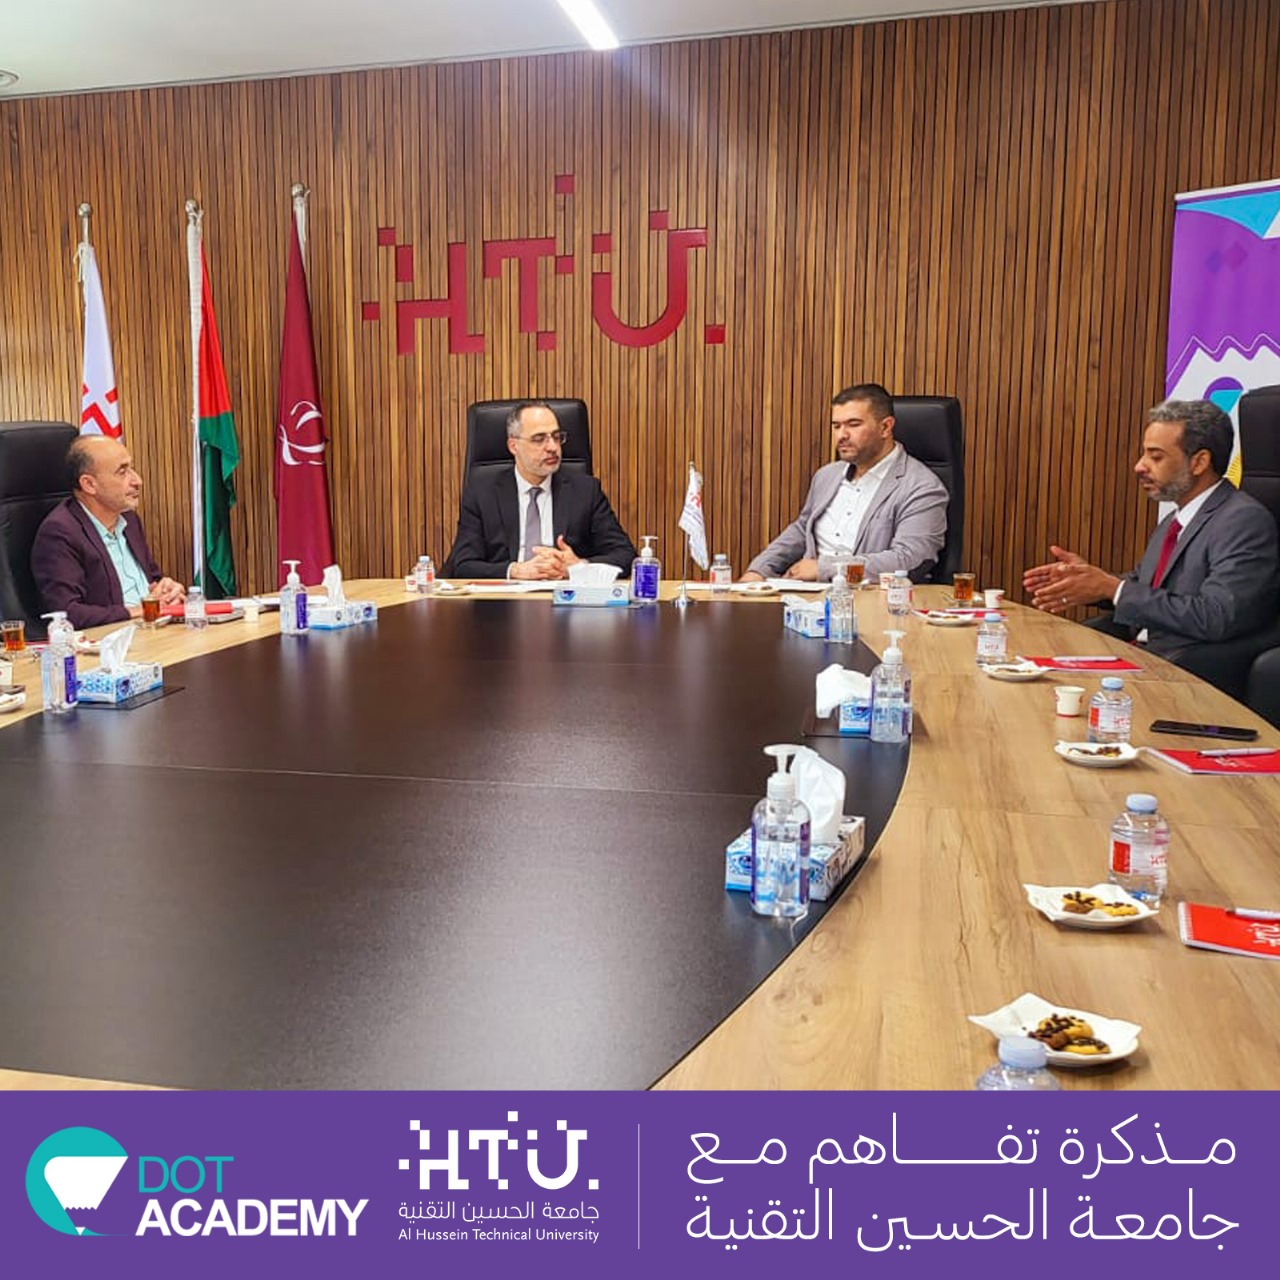 اتفاقية تعاون بين جامعة الحسين التقنية ودوت أكاديمي